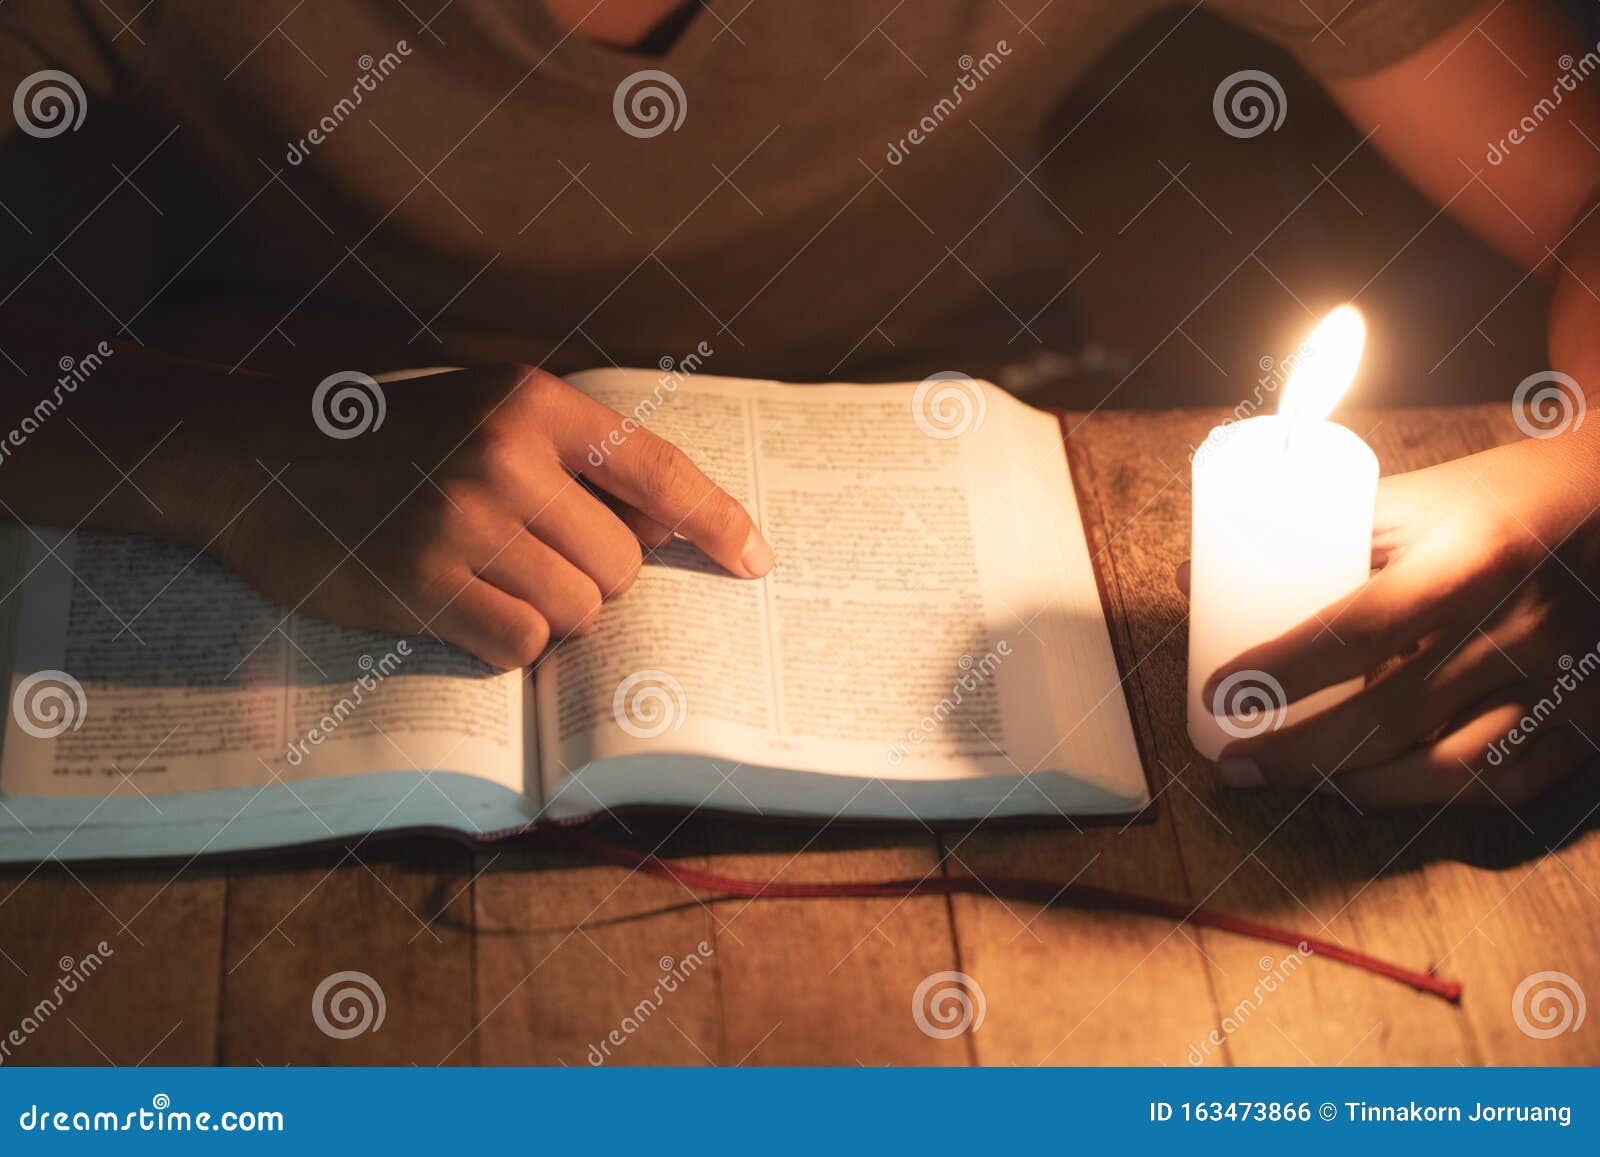 poor children read books using candles for lighting., disadvantaged children doing homework, education concept